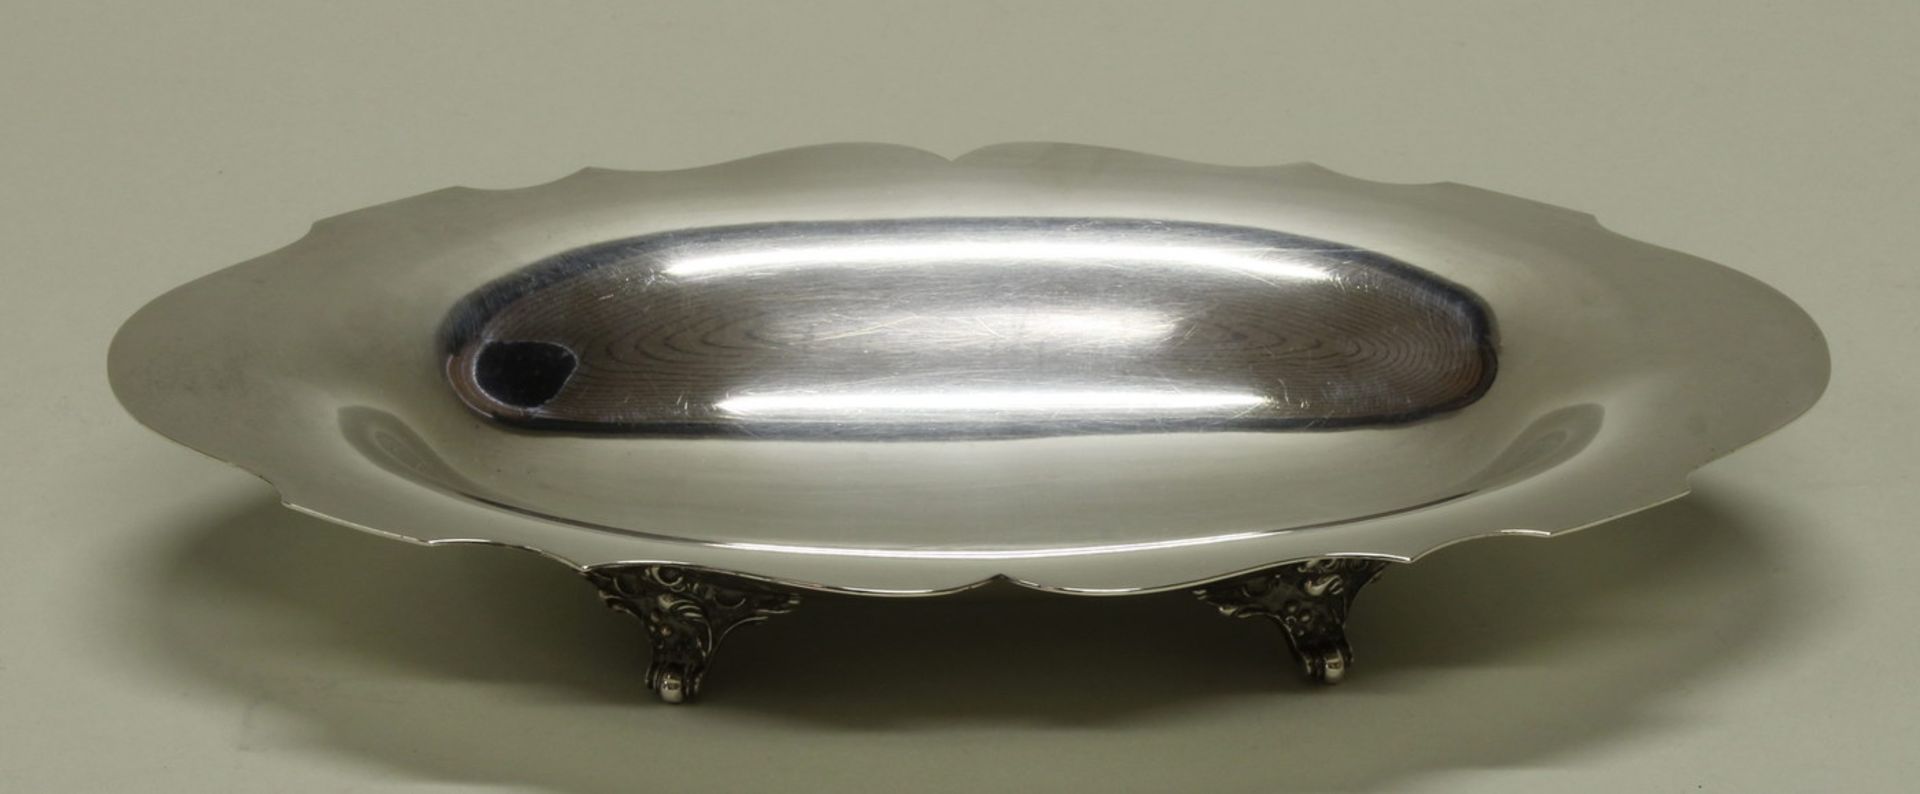 Schale, Silber 925, Wallace, oval, passig-geschweift, auf vier gegossenen Füßchen, 4 x 27 x 16.5 cm, - Image 2 of 2